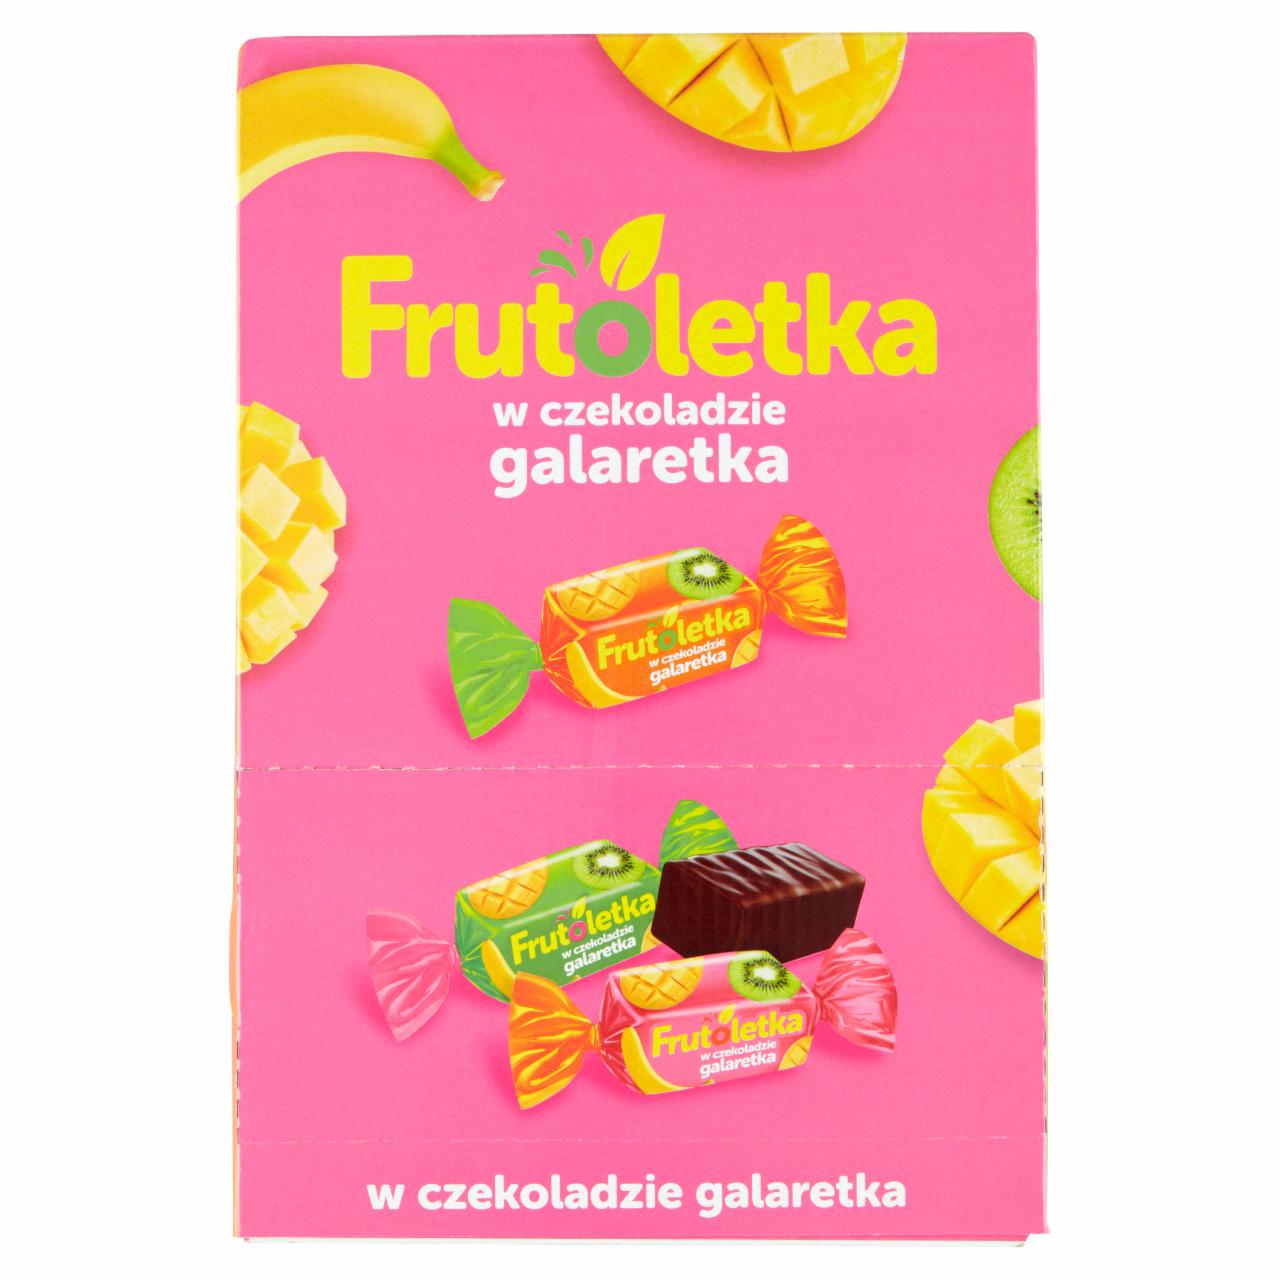 Zdjęcia - Frutoletka Galaretki w czekoladzie 2,5 kg